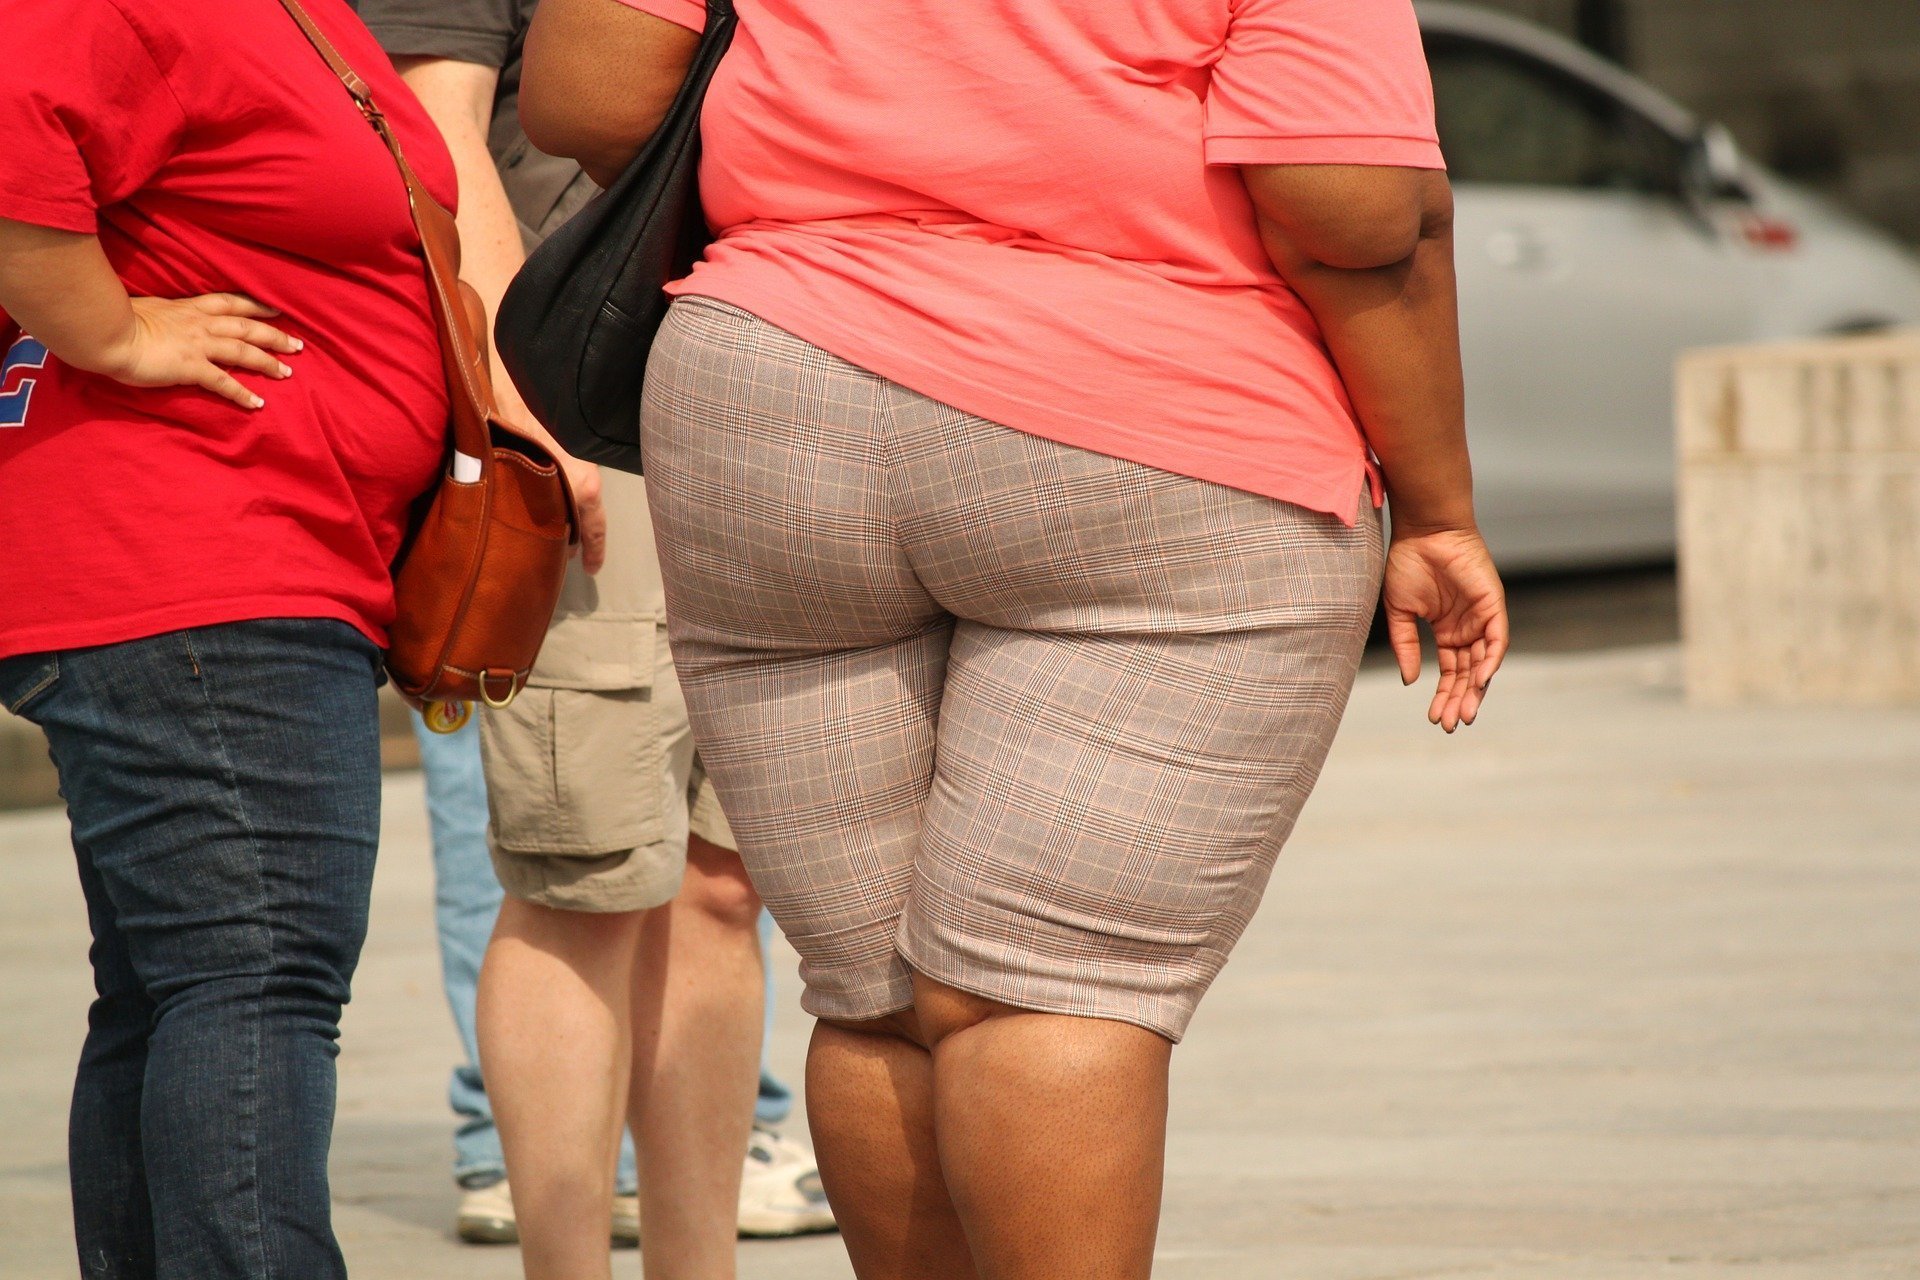 Dr. Diana Păun: Obezitatea, o problemă de sănătate publică, care necesită o abordare multidisciplinară